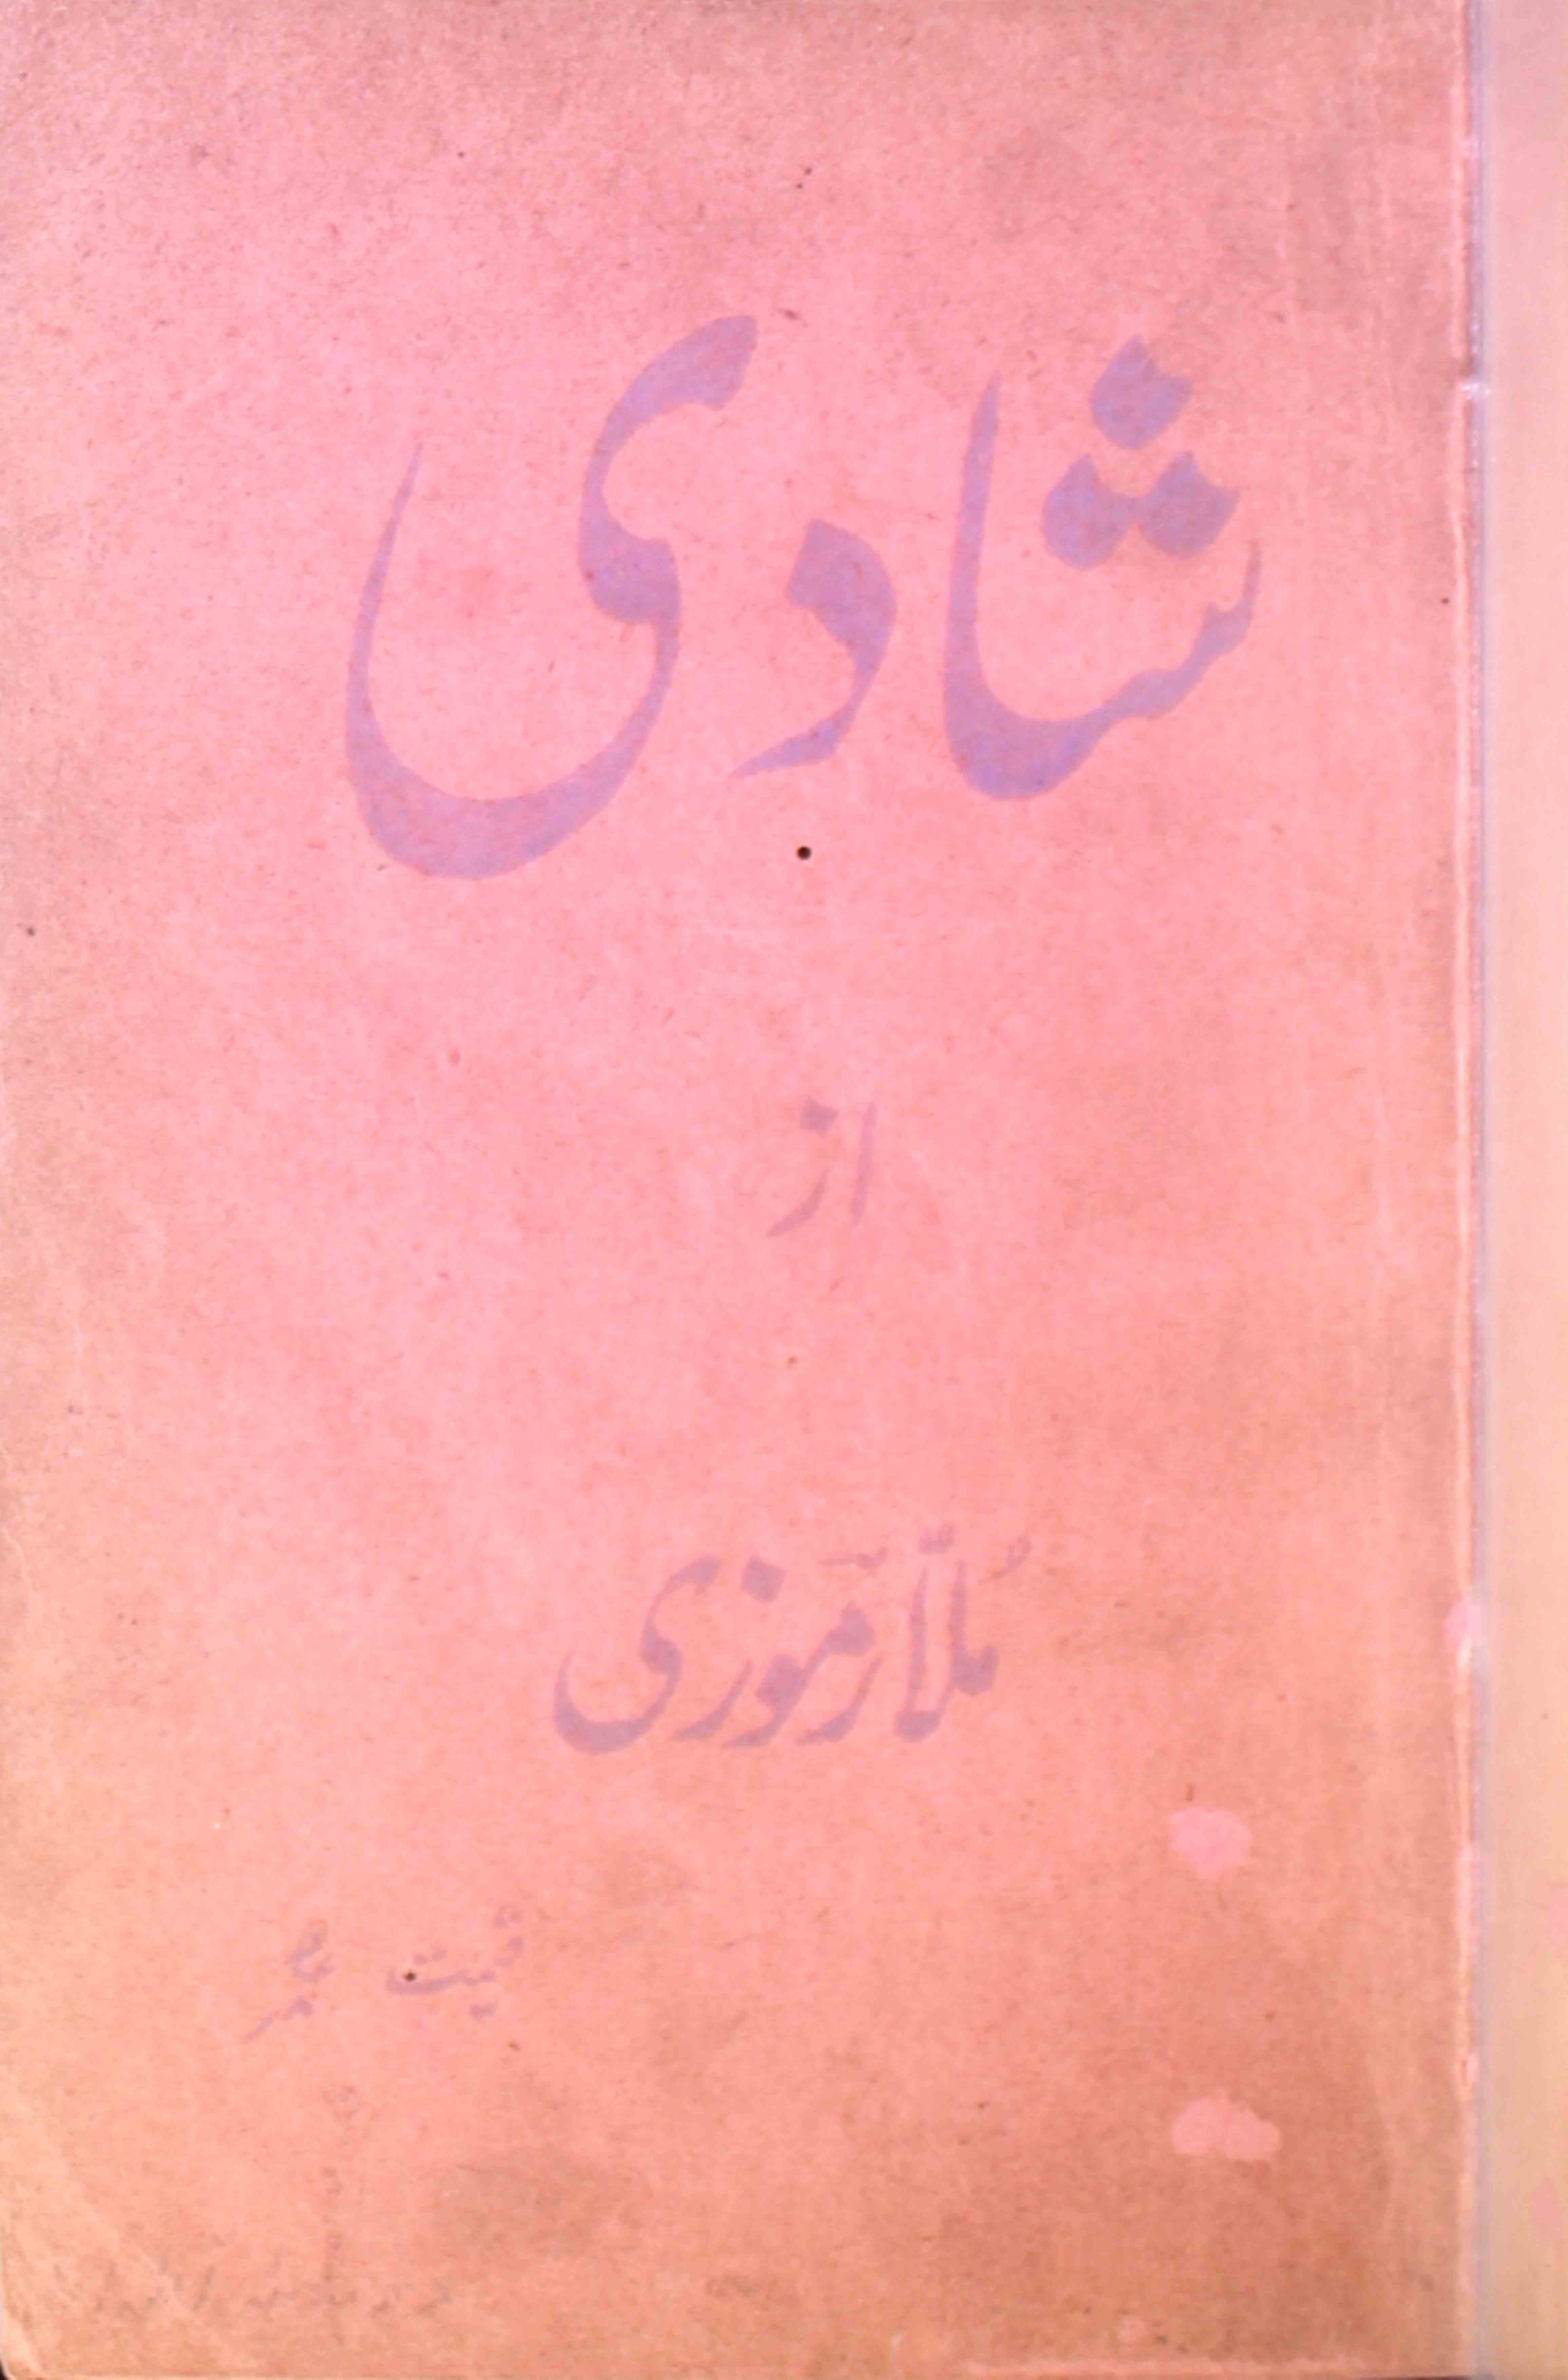 Muslim Wedding Card English Urdu Shadi Card cdr File